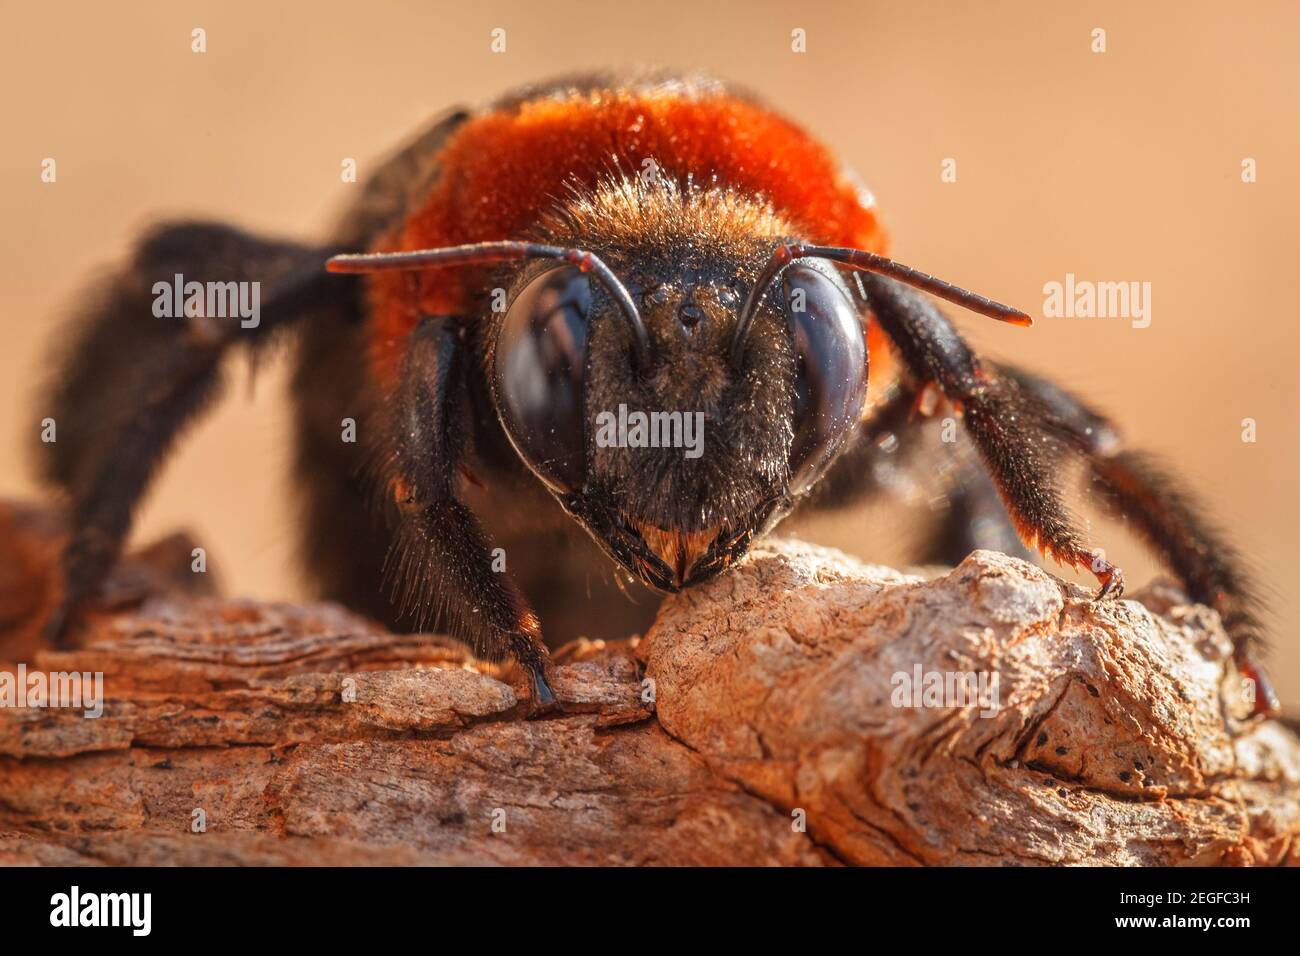 Portrait en gros plan de l'abeille géante de Carpenter, Xylocopa situfa, Bela-Bela, province de Limpopo, Afrique du Sud Banque D'Images